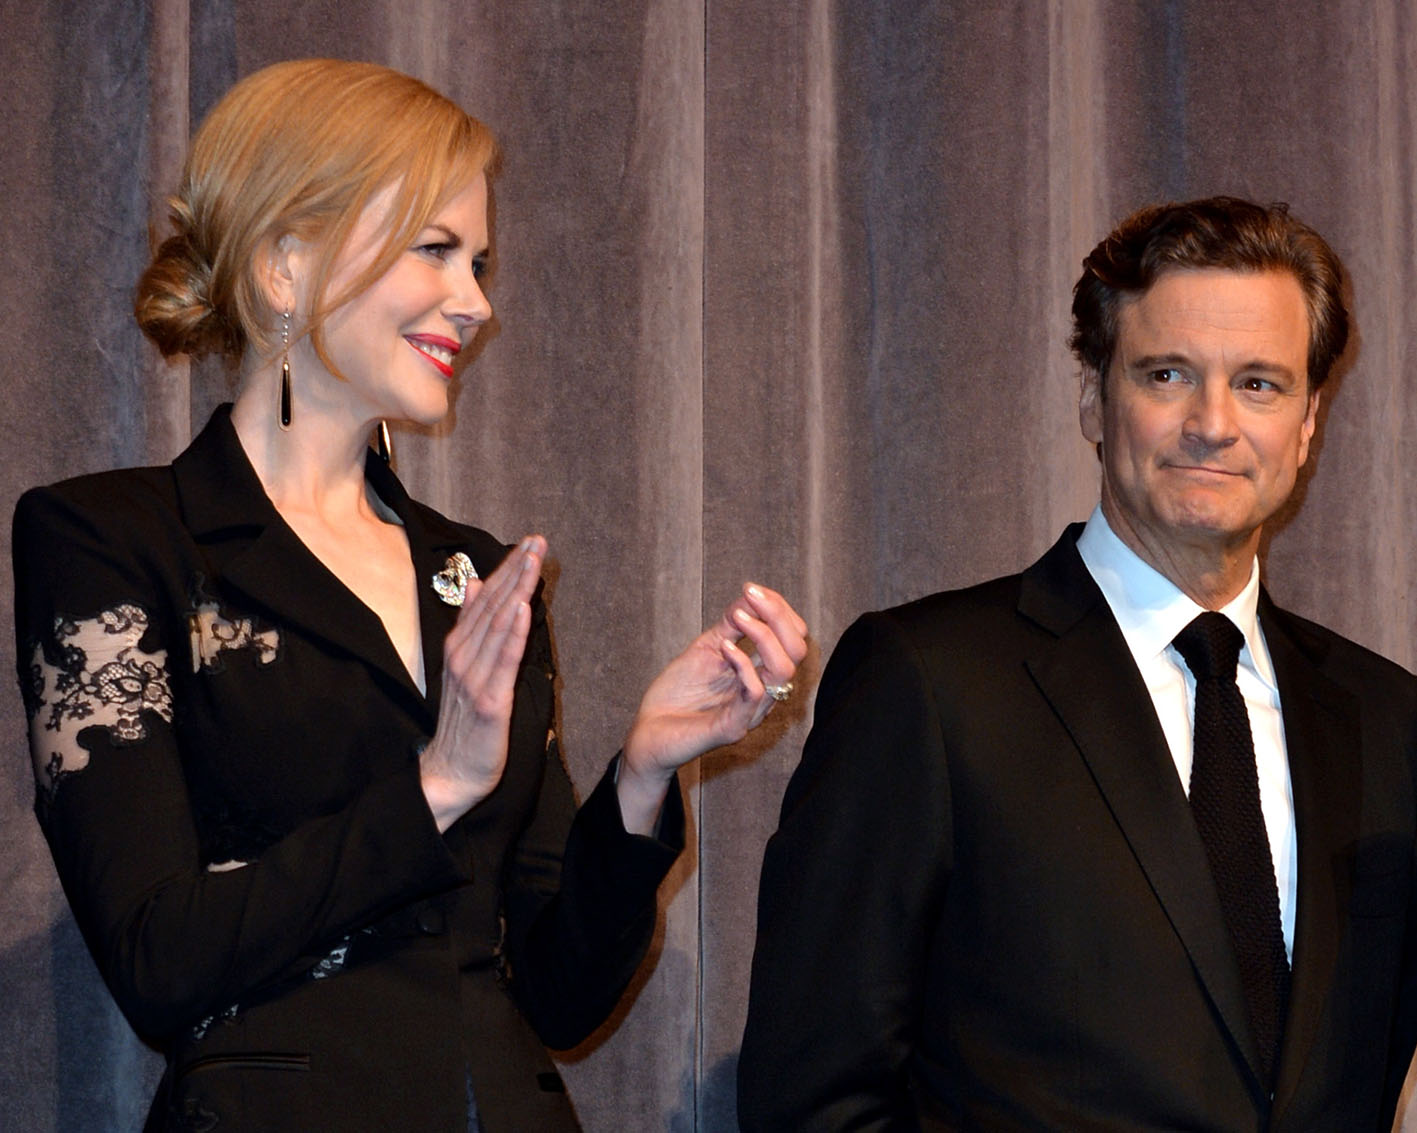 Οι ηθοποιοί Nicole Kidman και Colin Firth στην πρεμιέρα της ταινίας "The Railway Man" κατά τη διάρκεια του Φεστιβάλ Κινηματογράφου του Τoronto 2013.